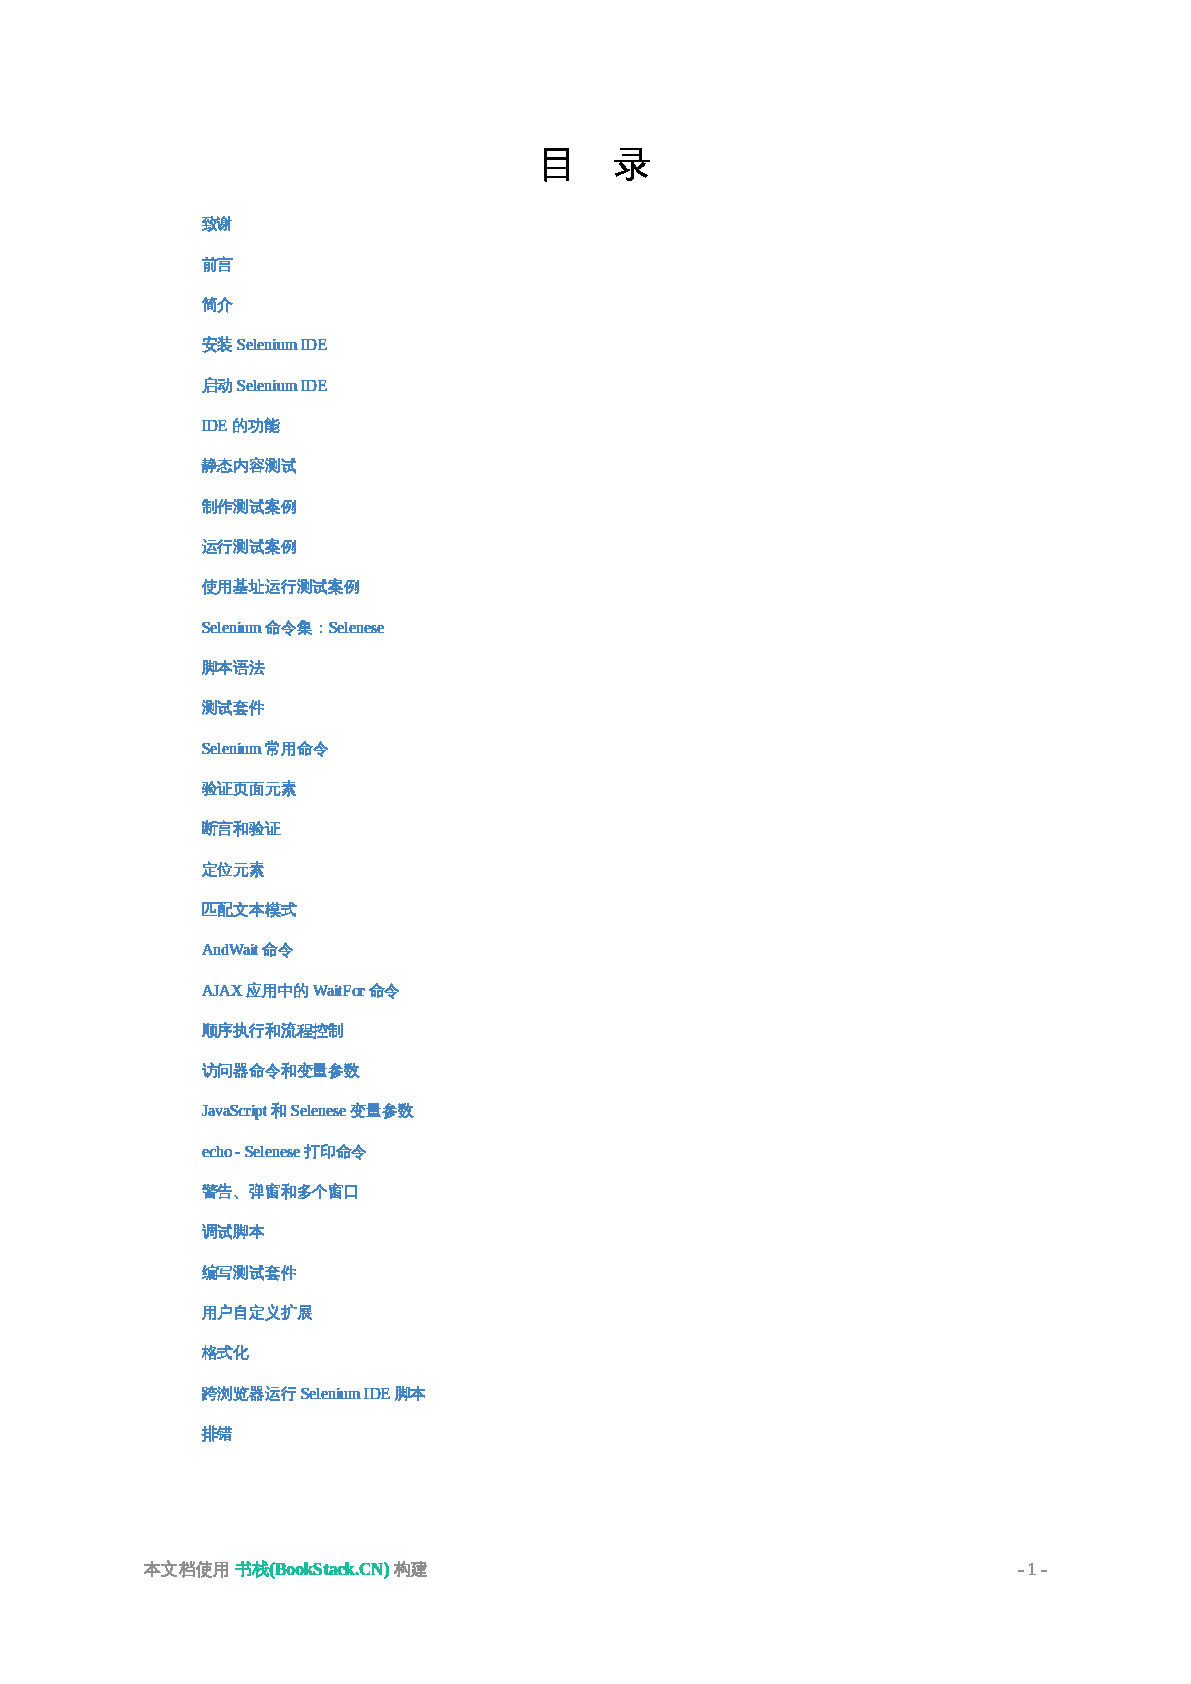 Selenium_IDE_官方文档翻译